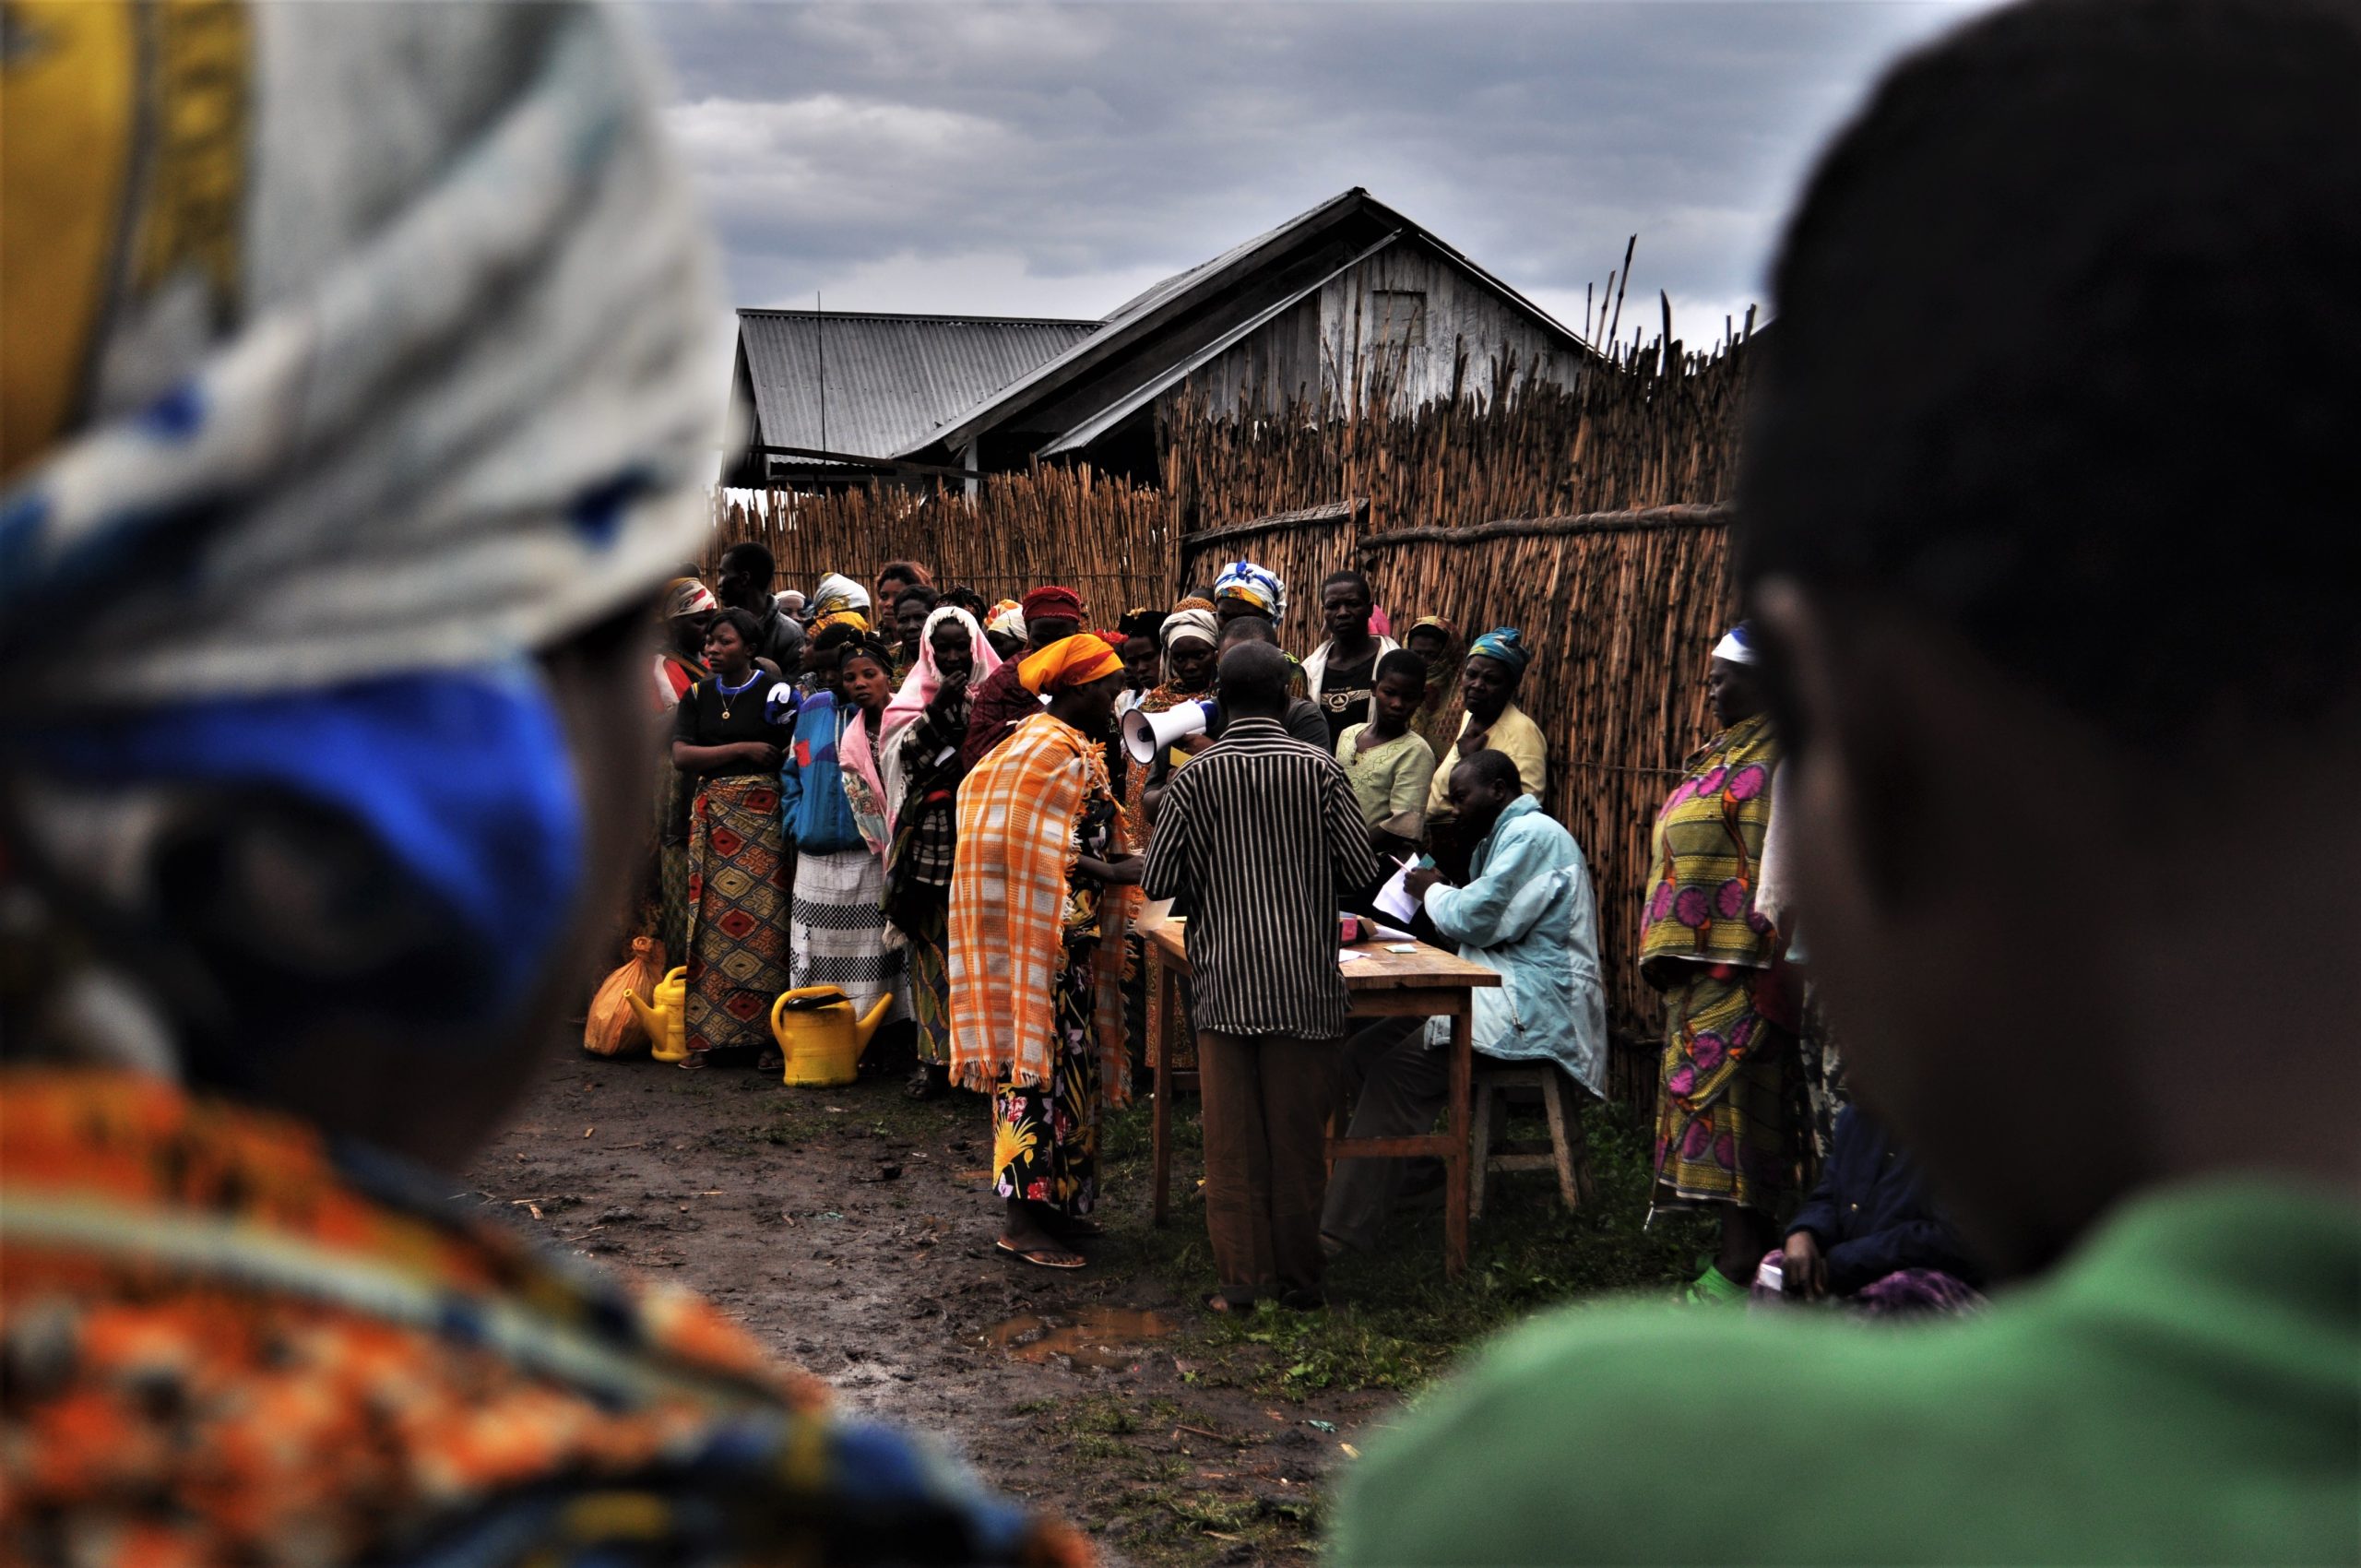 Nicola Pin - ho lavorato per AVSI in RDC tra il 2009 e il 2011. Mia moglie Maria Elena Latini (AVSI staff) mi ha detto dell'iniziativa cosi' condivido con voi alcune foto scattate in Congo da me.